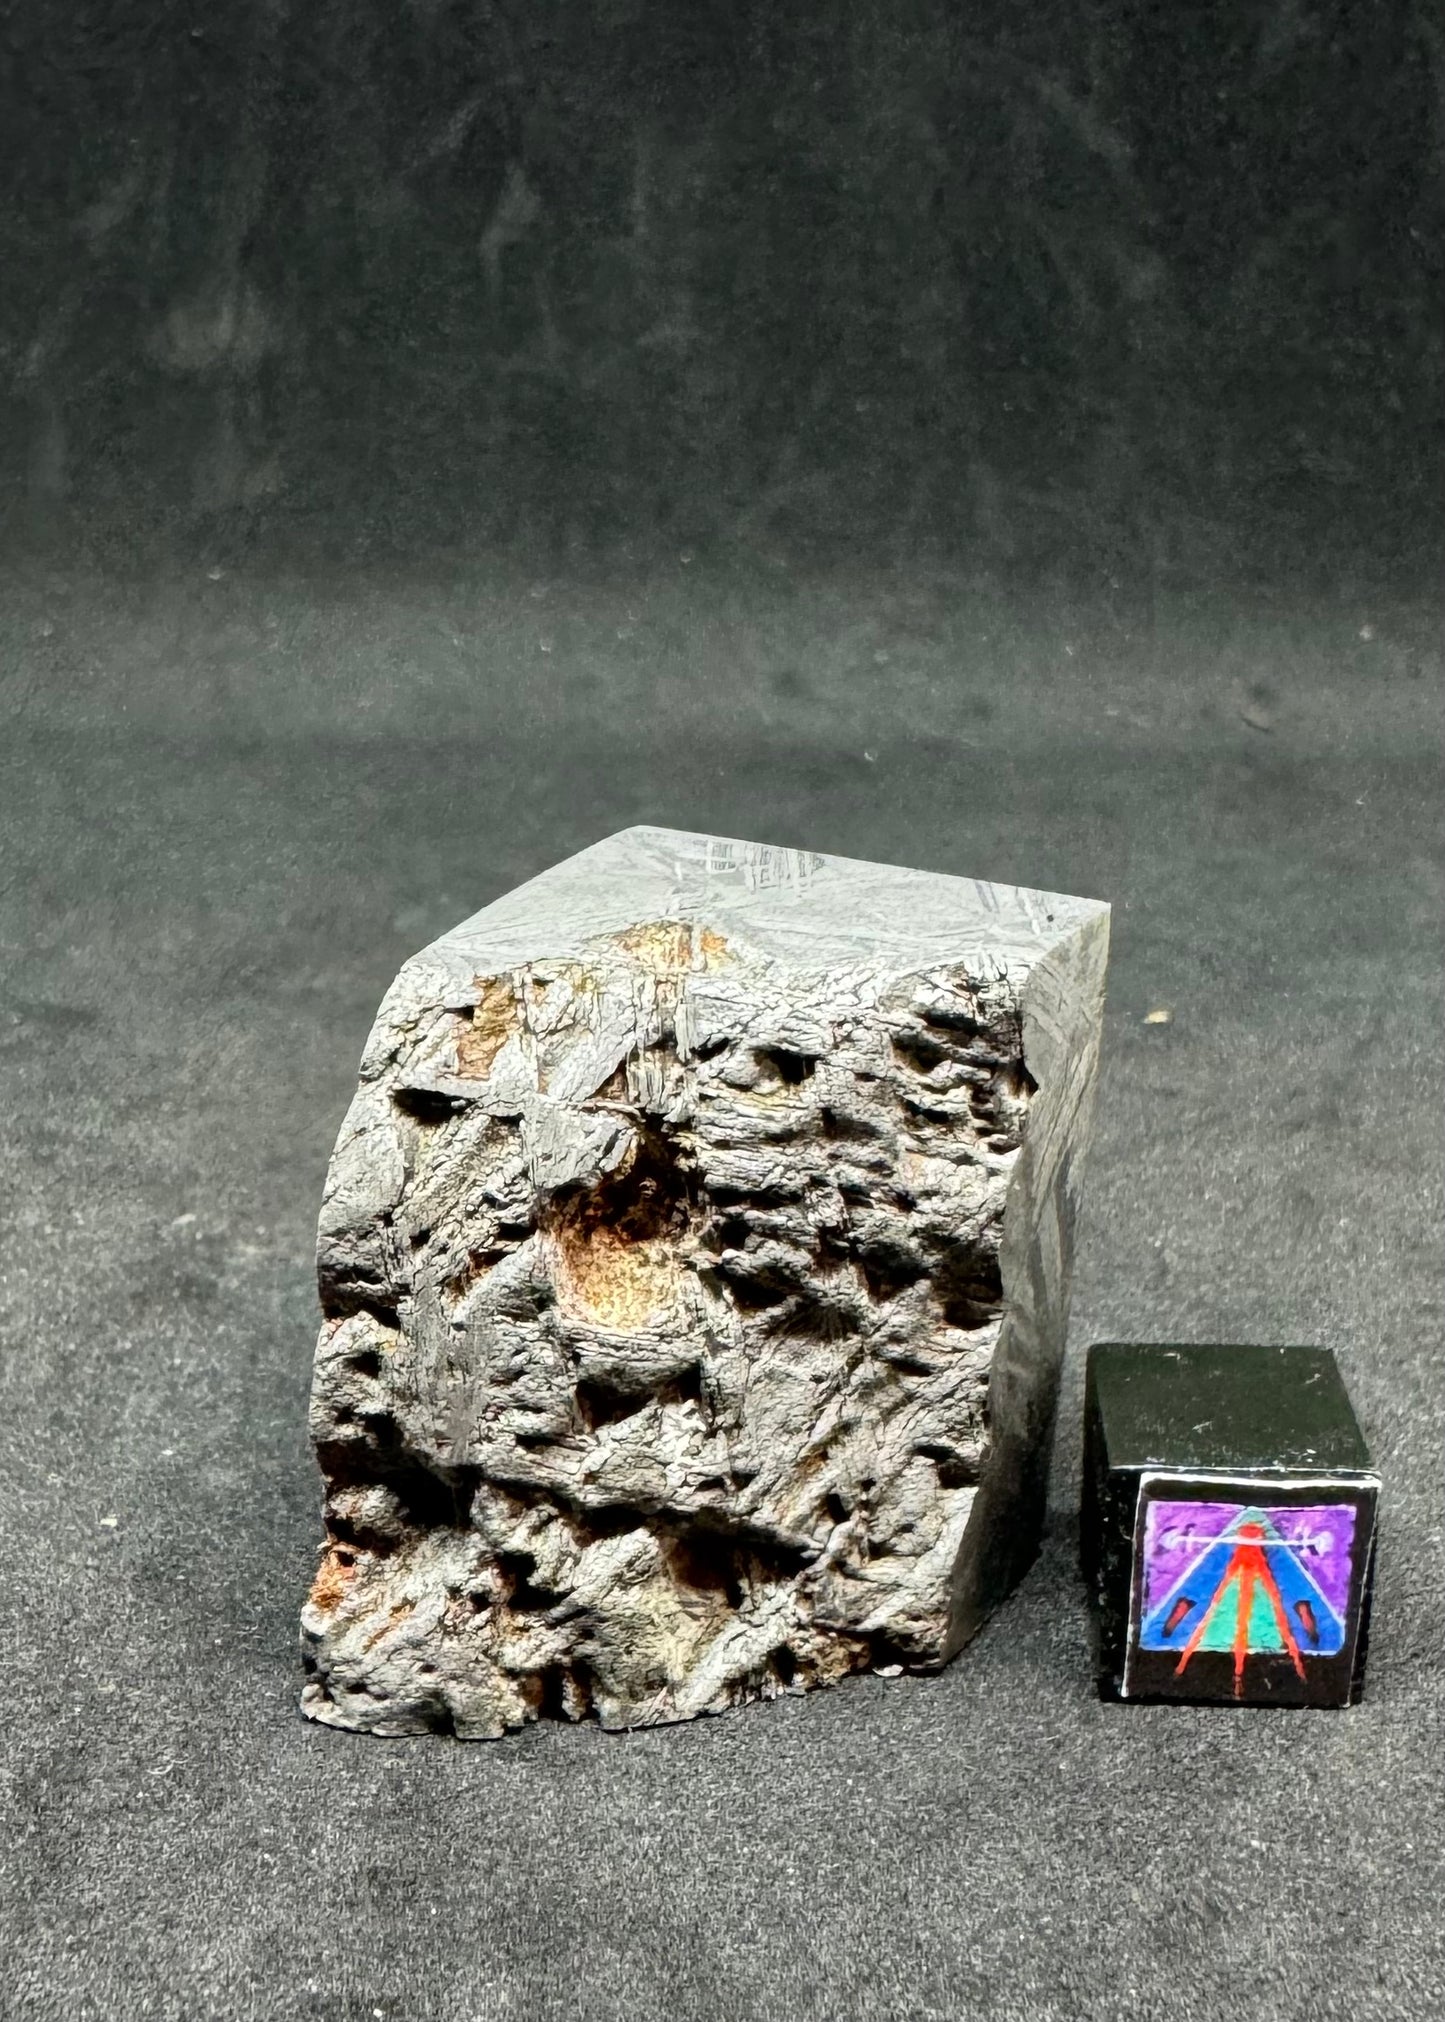 Muonionalusta Iron Meteorite - End Piece - 78.7g